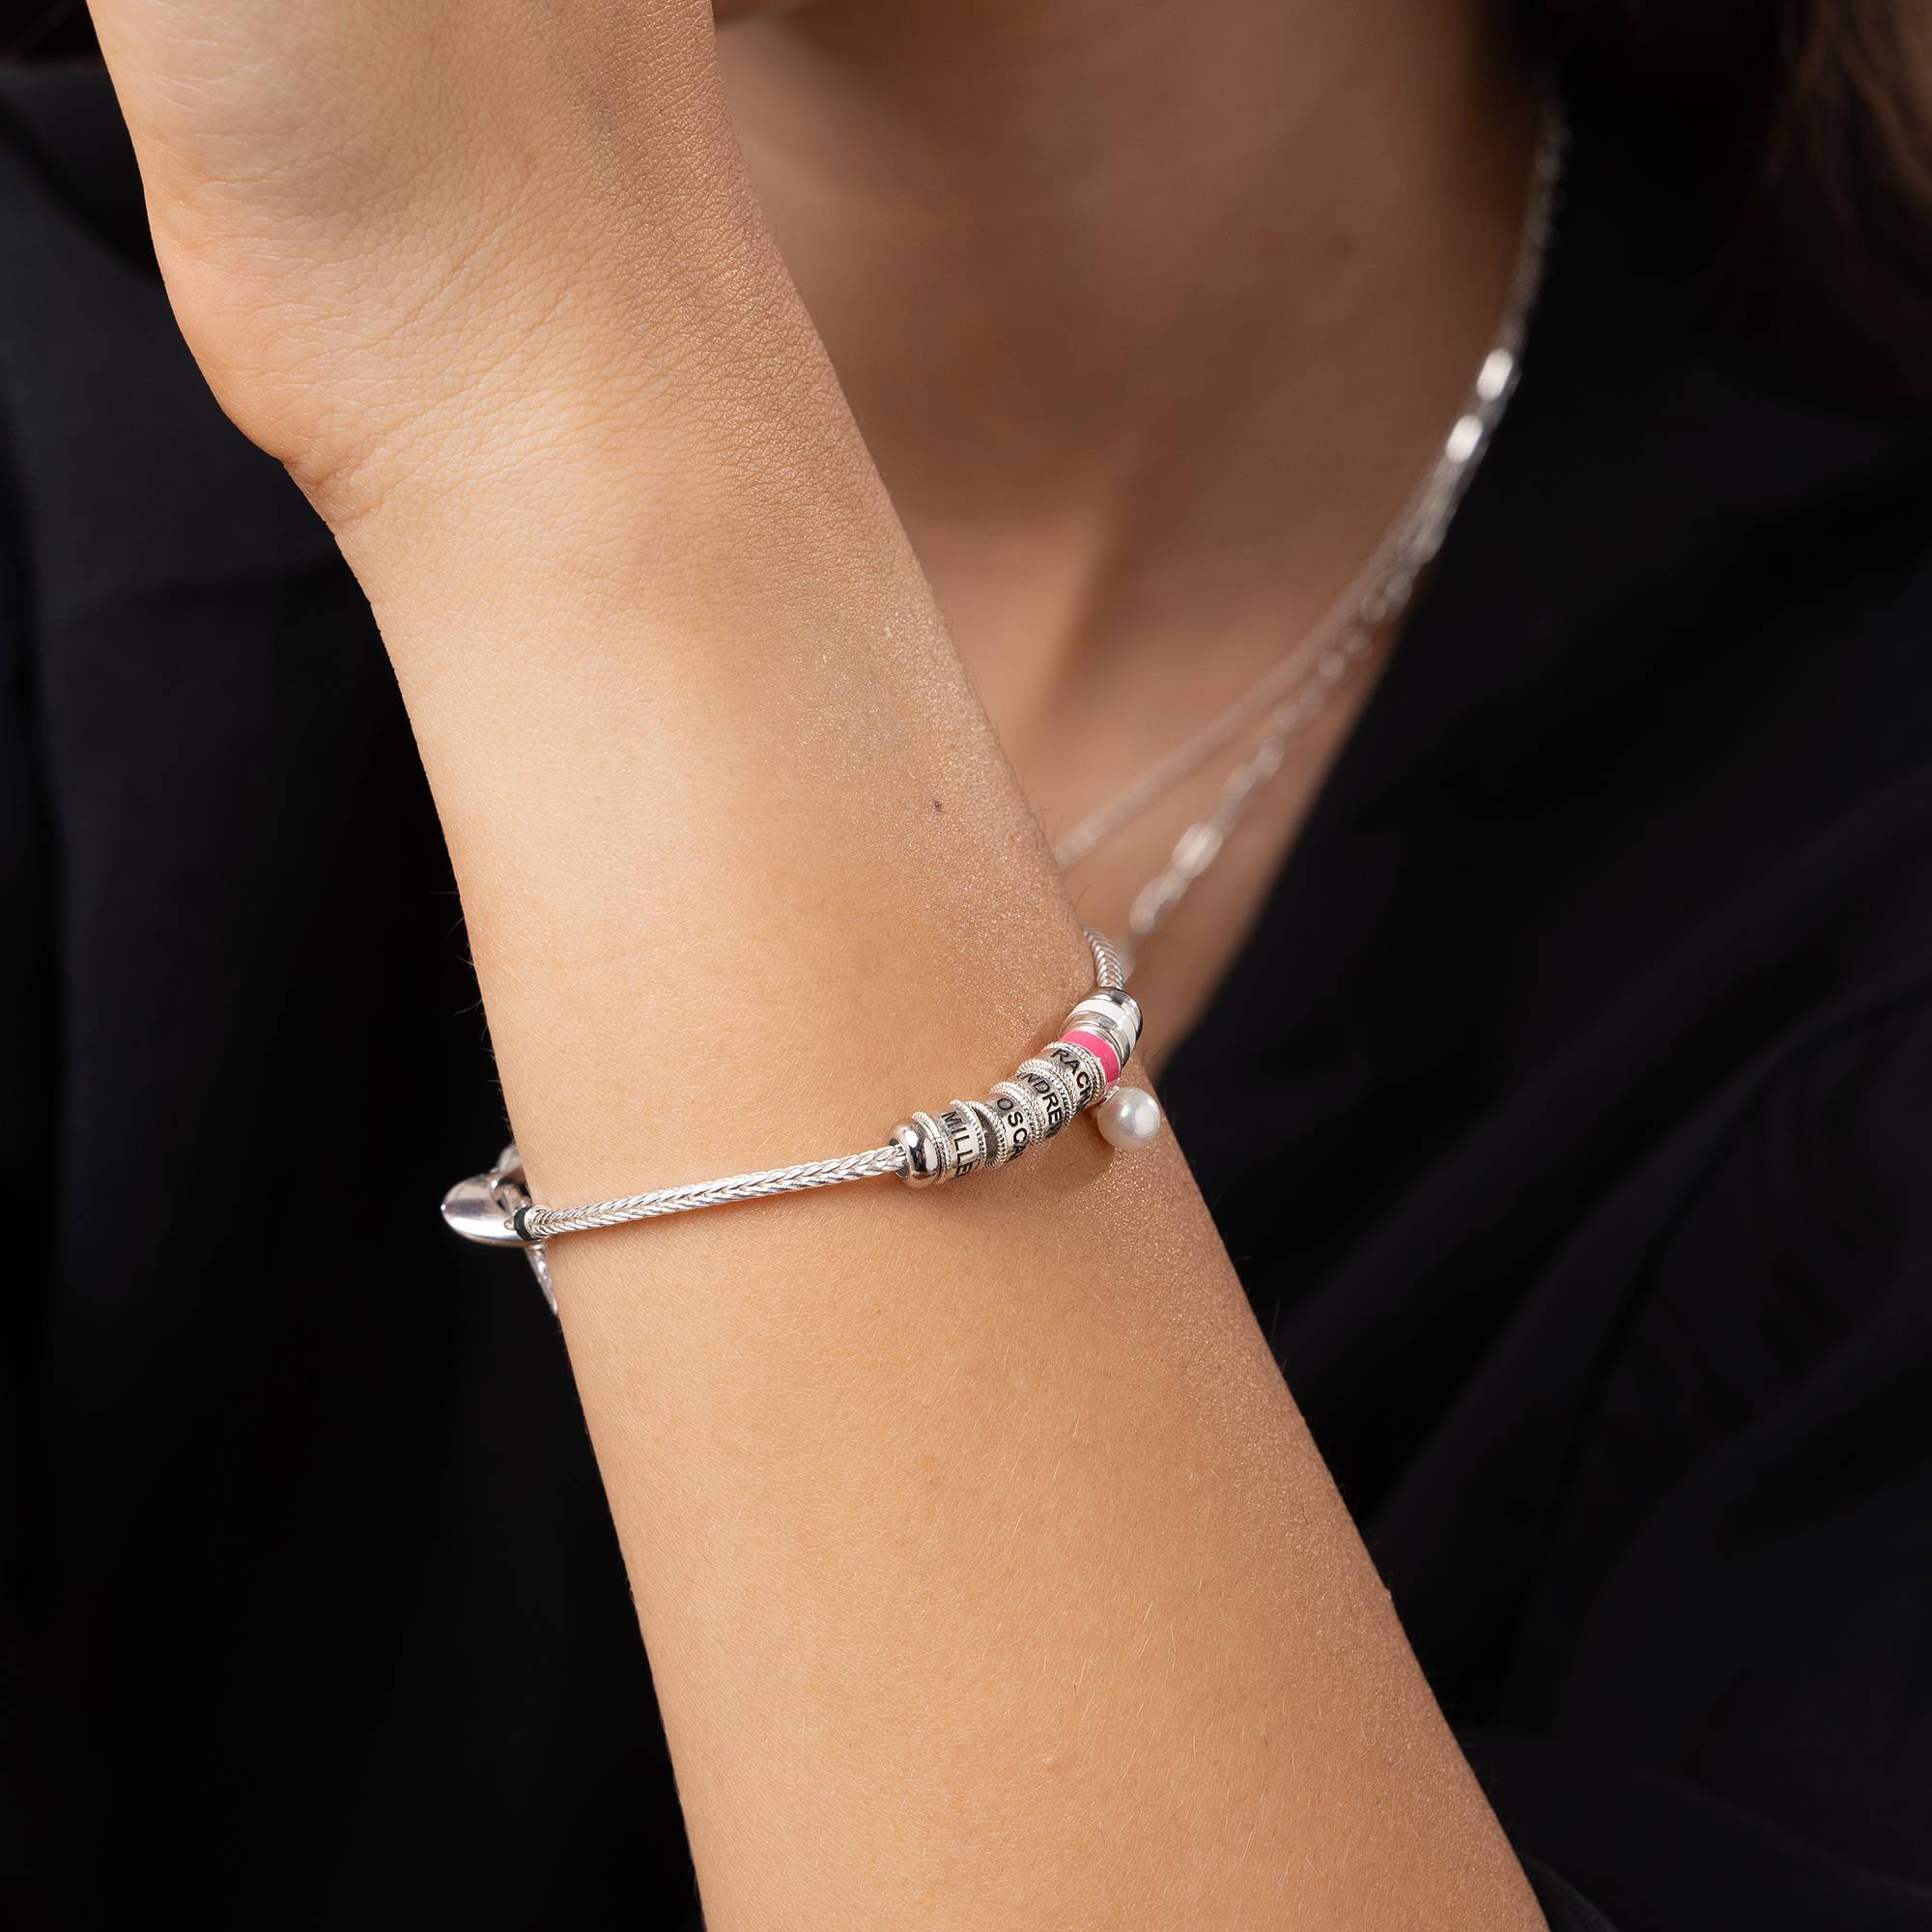 Linda Armband met Hartvormig Slotje, Diamant & emaille kralen in Sterling Zilver-4 Productfoto